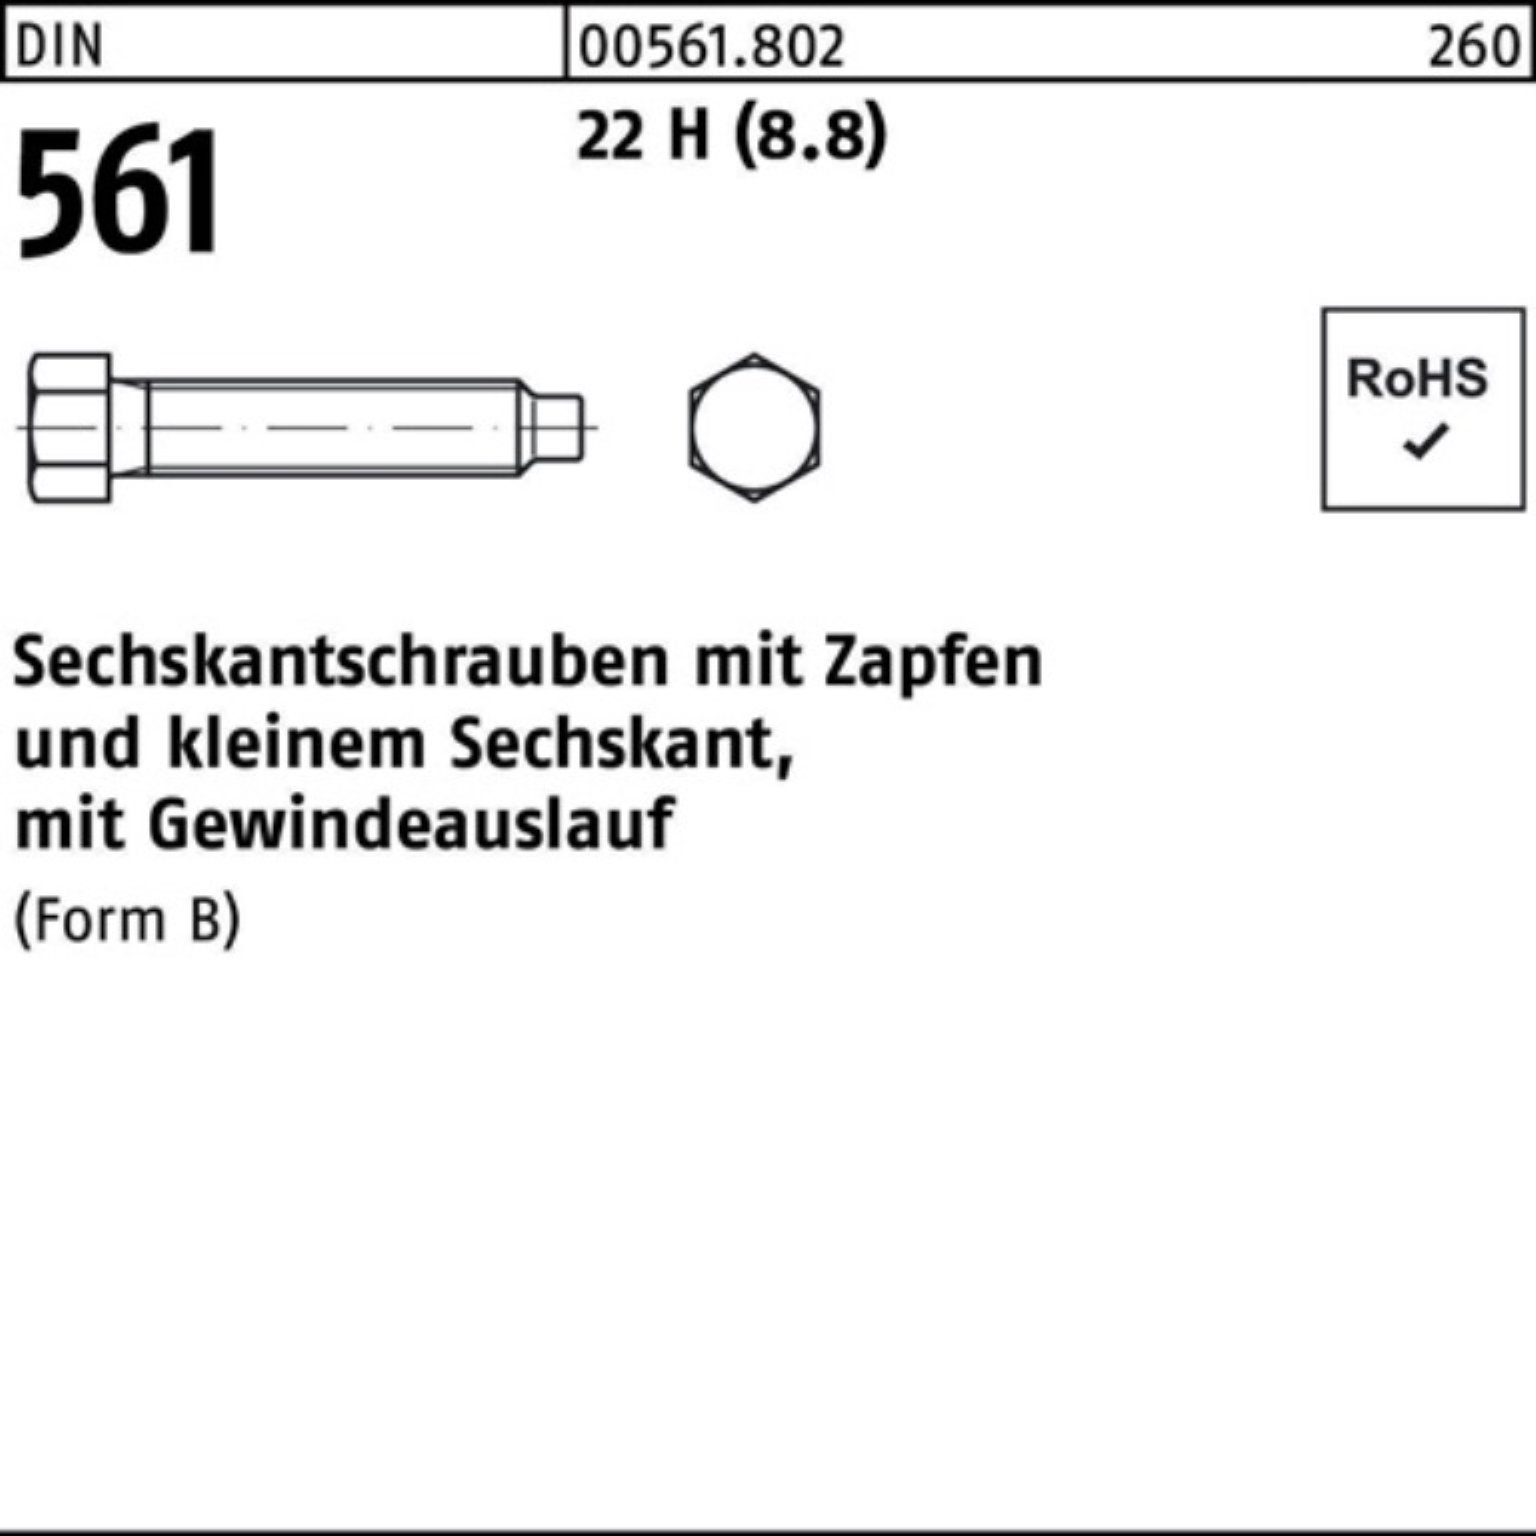 25 16x Reyher Pack Zapfen (8.8) 561 H 22 100er Sechskantschraube BM 50 DIN Sechskantschraube St